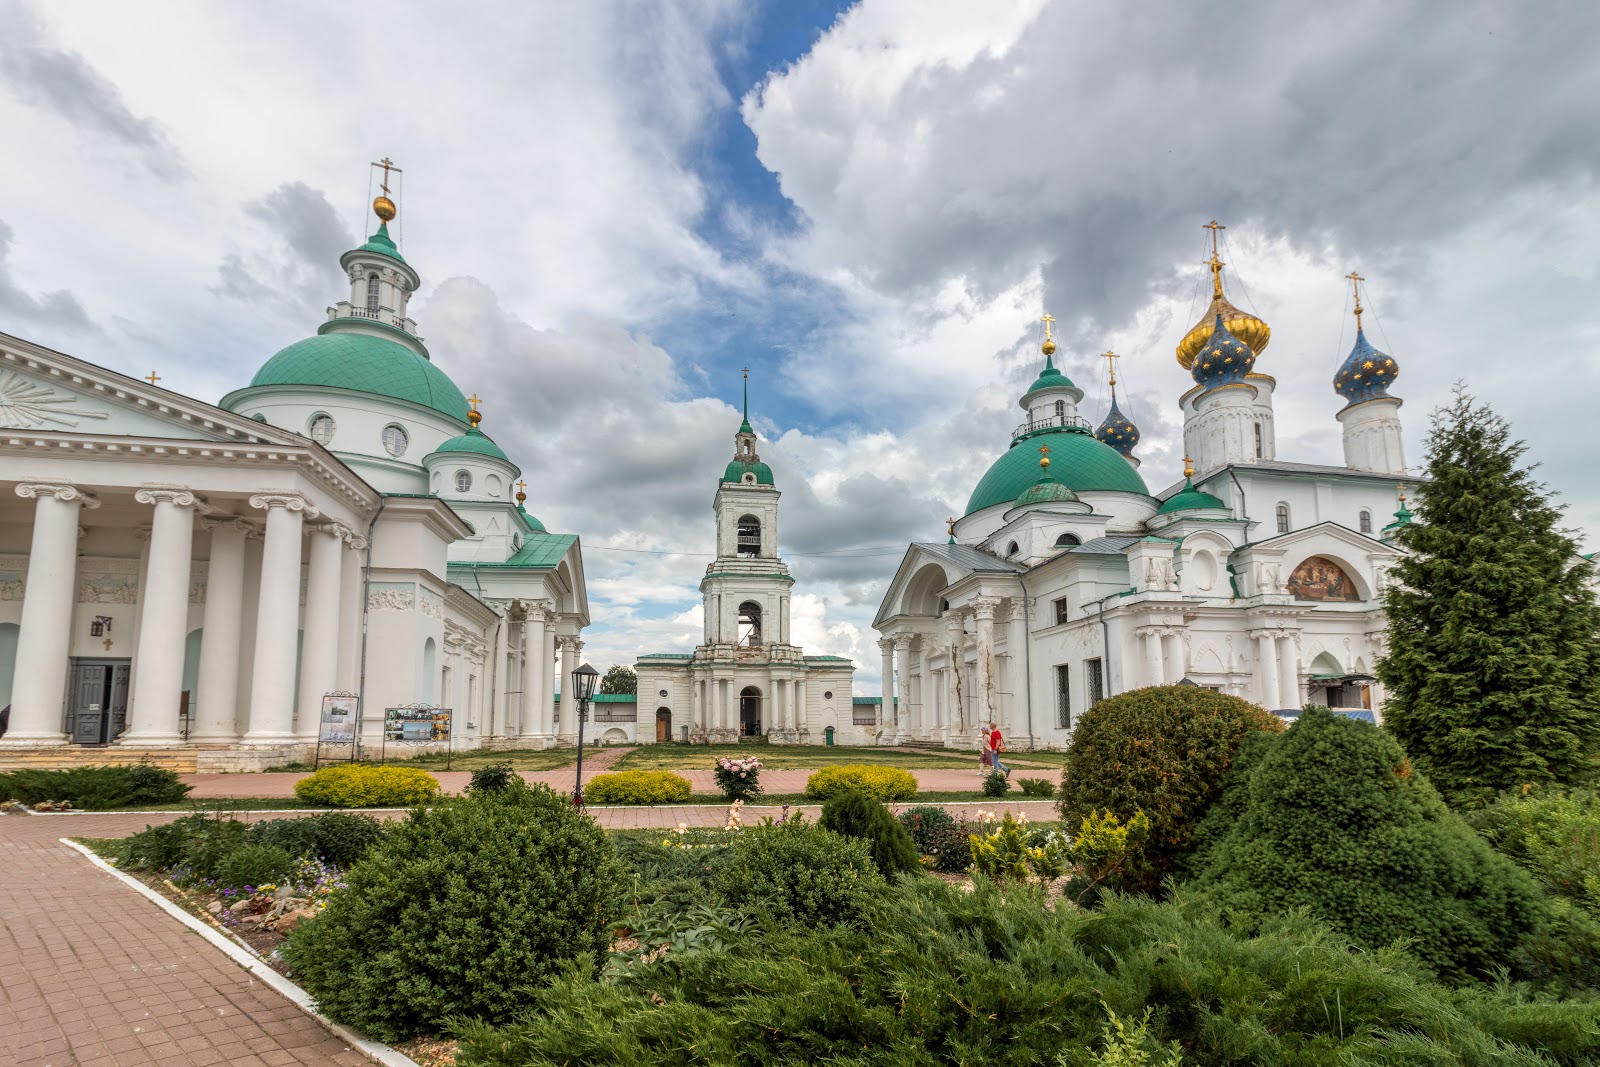 Spaso-Yakovlevskiy Monastery